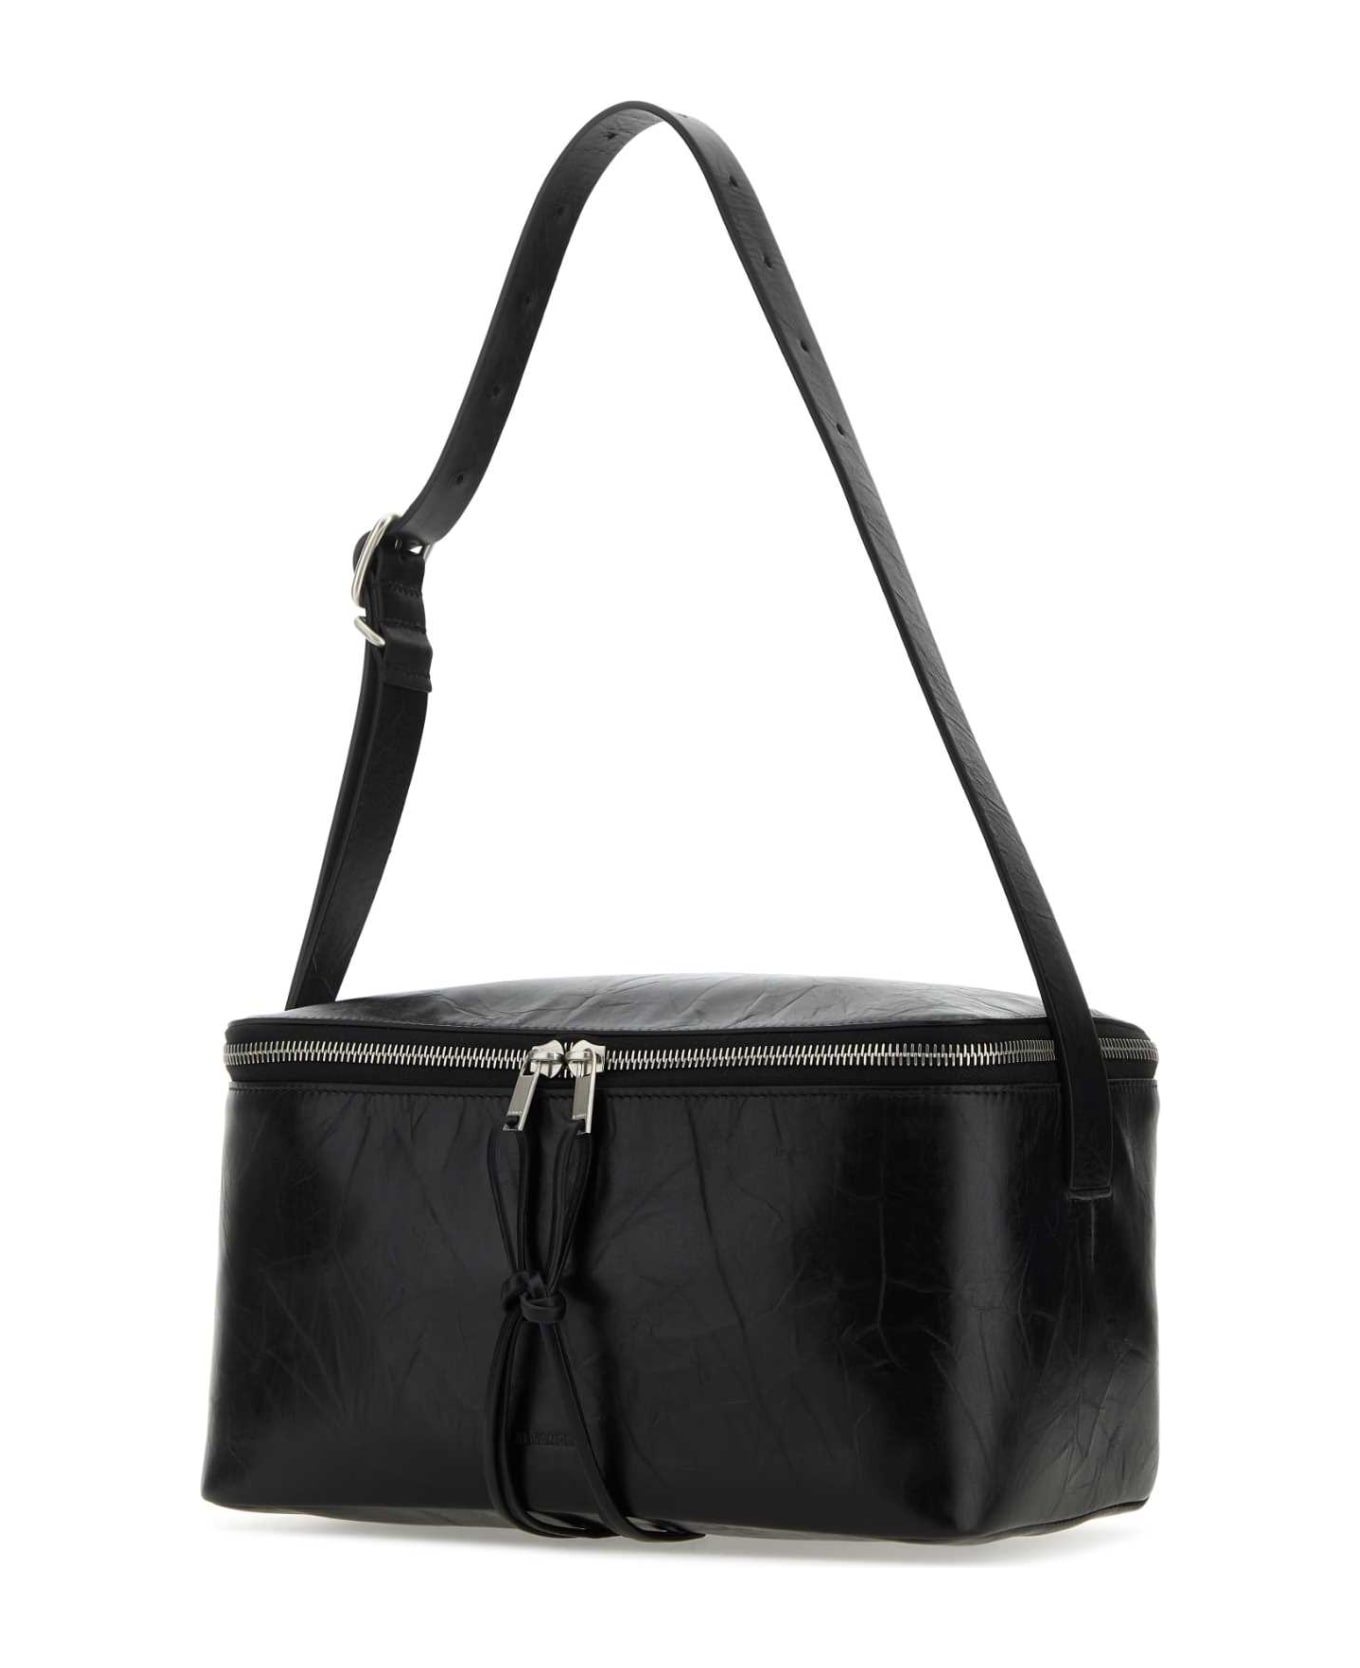 Black Leather Medium Shoulder Bag - 2